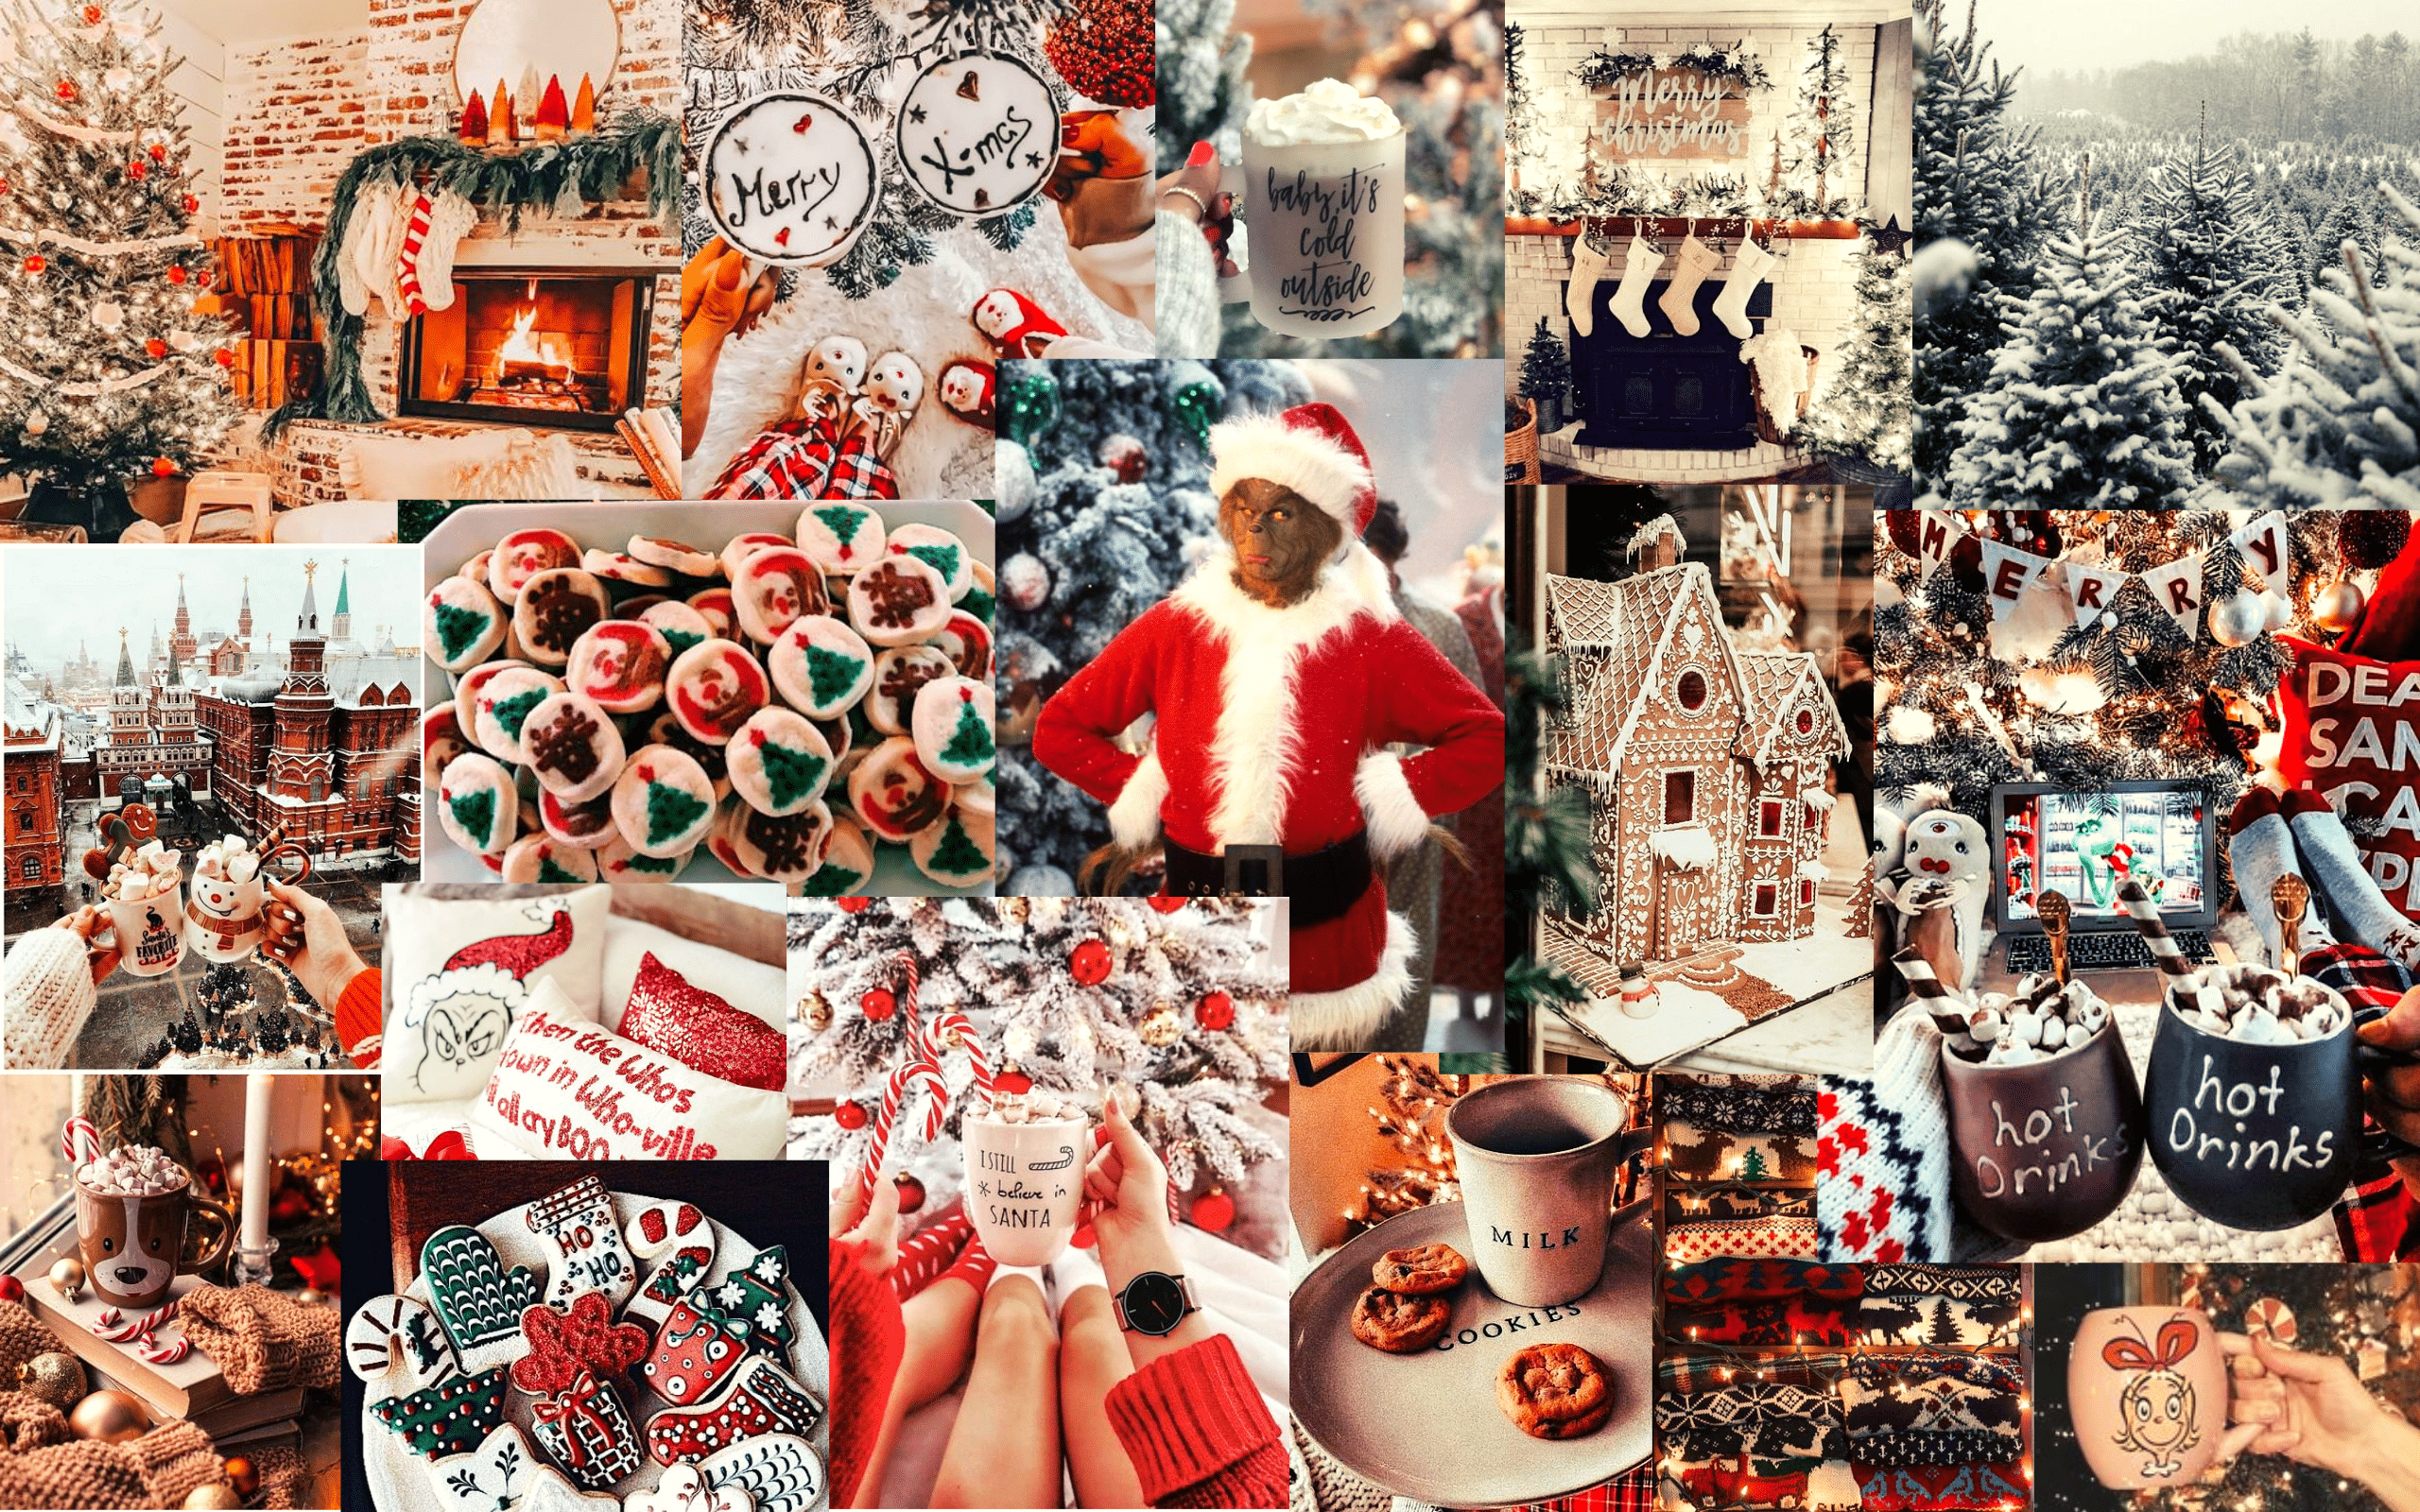 Hãy chiêm ngưỡng những bức hình chụp cận cảnh tuyệt đẹp của phong cảnh Giáng Sinh qua bộ sưu tập Christmas Collage này. Từ những chú tuần lộc ngộ nghĩnh đến những bông tuyết xinh đẹp, bạn sẽ được khám phá những điều bất ngờ thú vị của mùa lễ hội này.